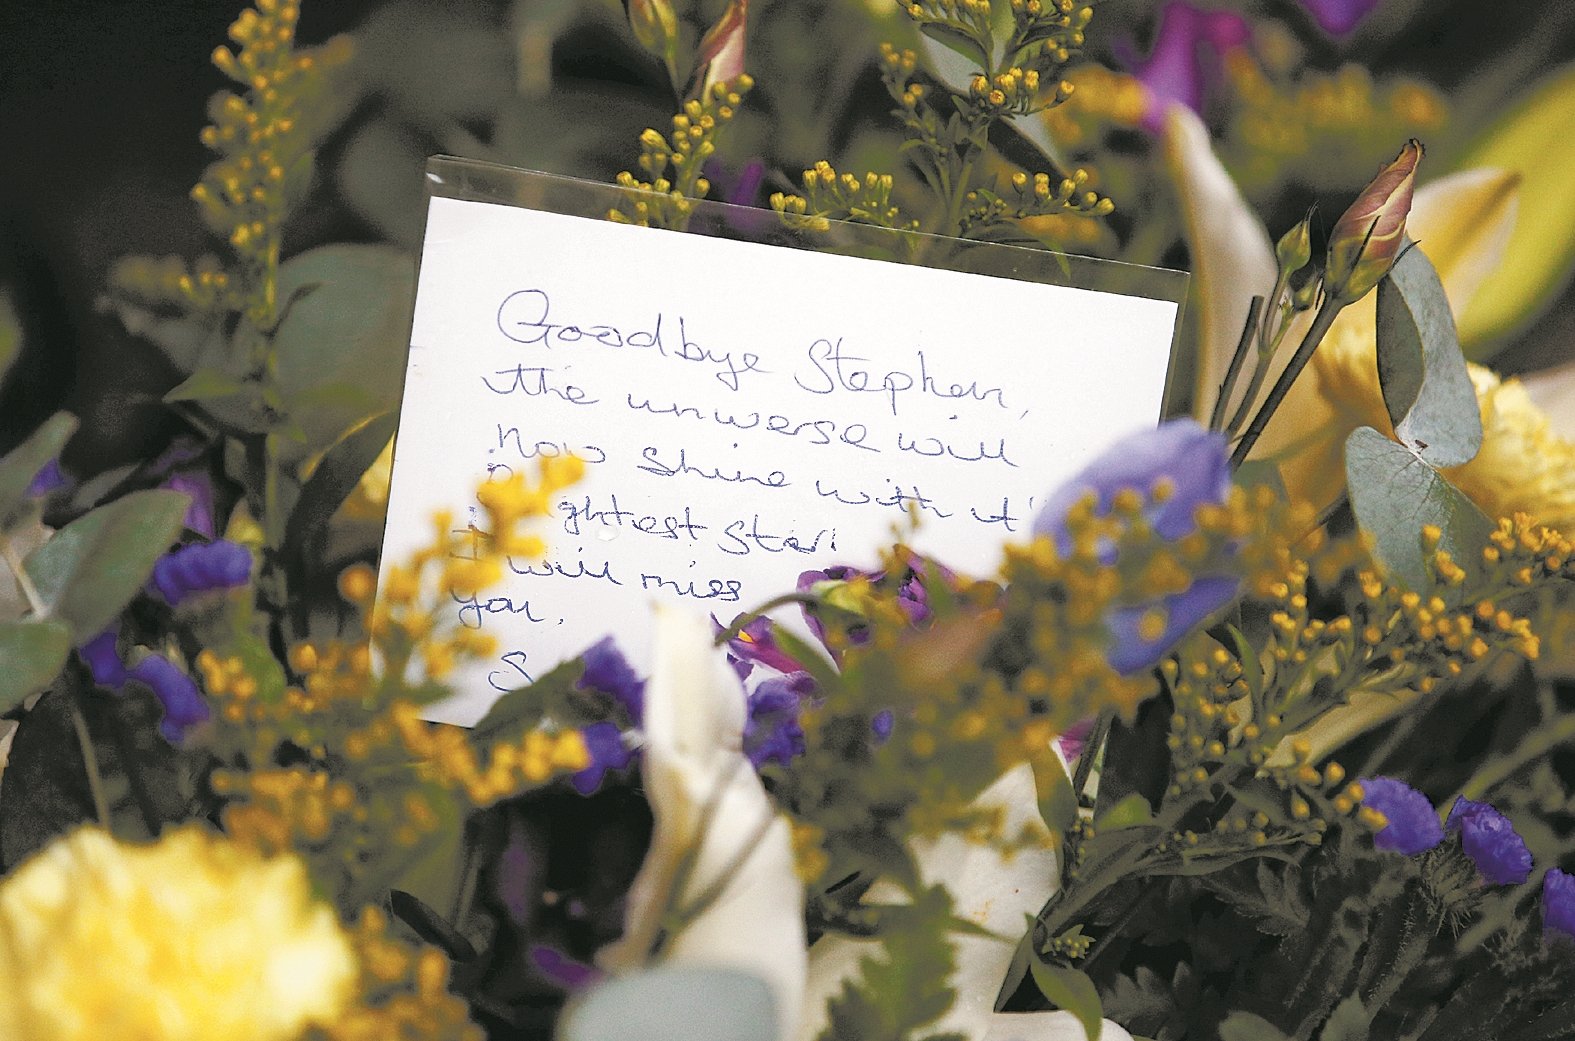 民众在教堂外献上鲜花，当中放有写上寄语的卡片，向霍金道别的字句间表达了对这位奇才的不舍。